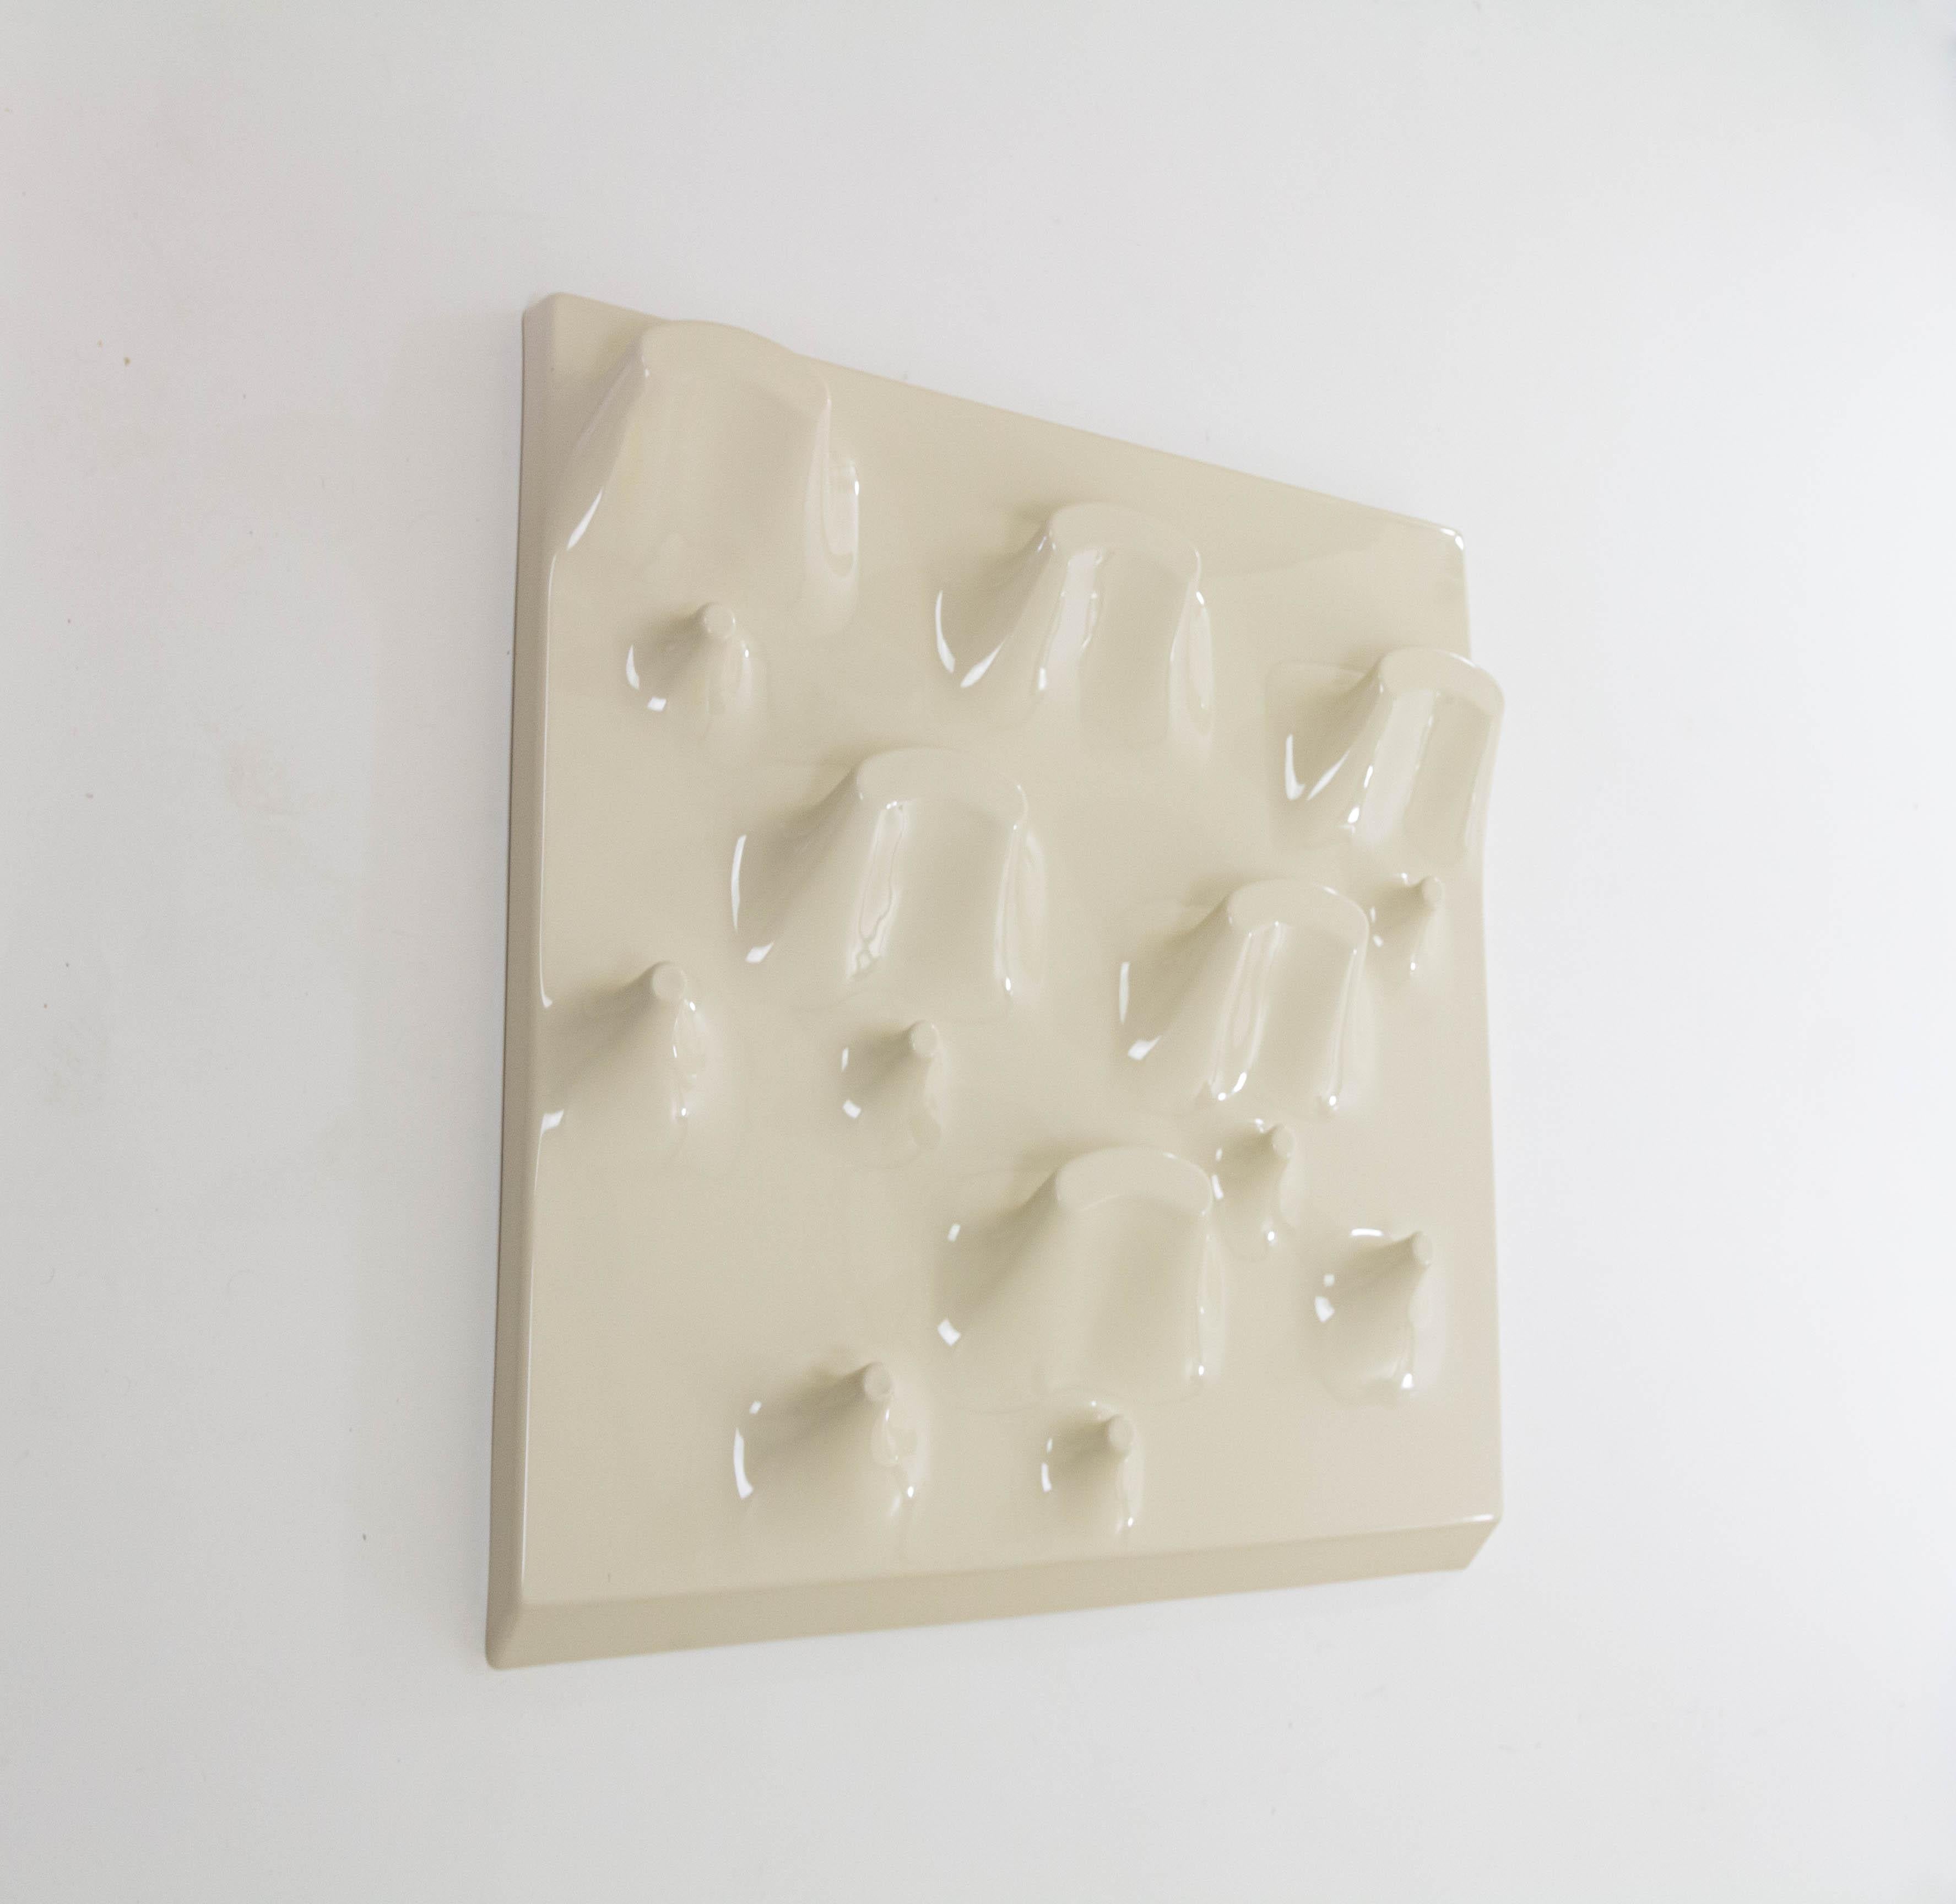 Plattengarderobe, die gleichzeitig als skulpturales Wandobjekt dient, entworfen von Jonathan De Pas, Donato D'Urbino und Paolo Lomazzi für Longato Arredamenti in Italien im Jahr 1969.

Das als Garderobenständer konzipierte Objekt besteht aus